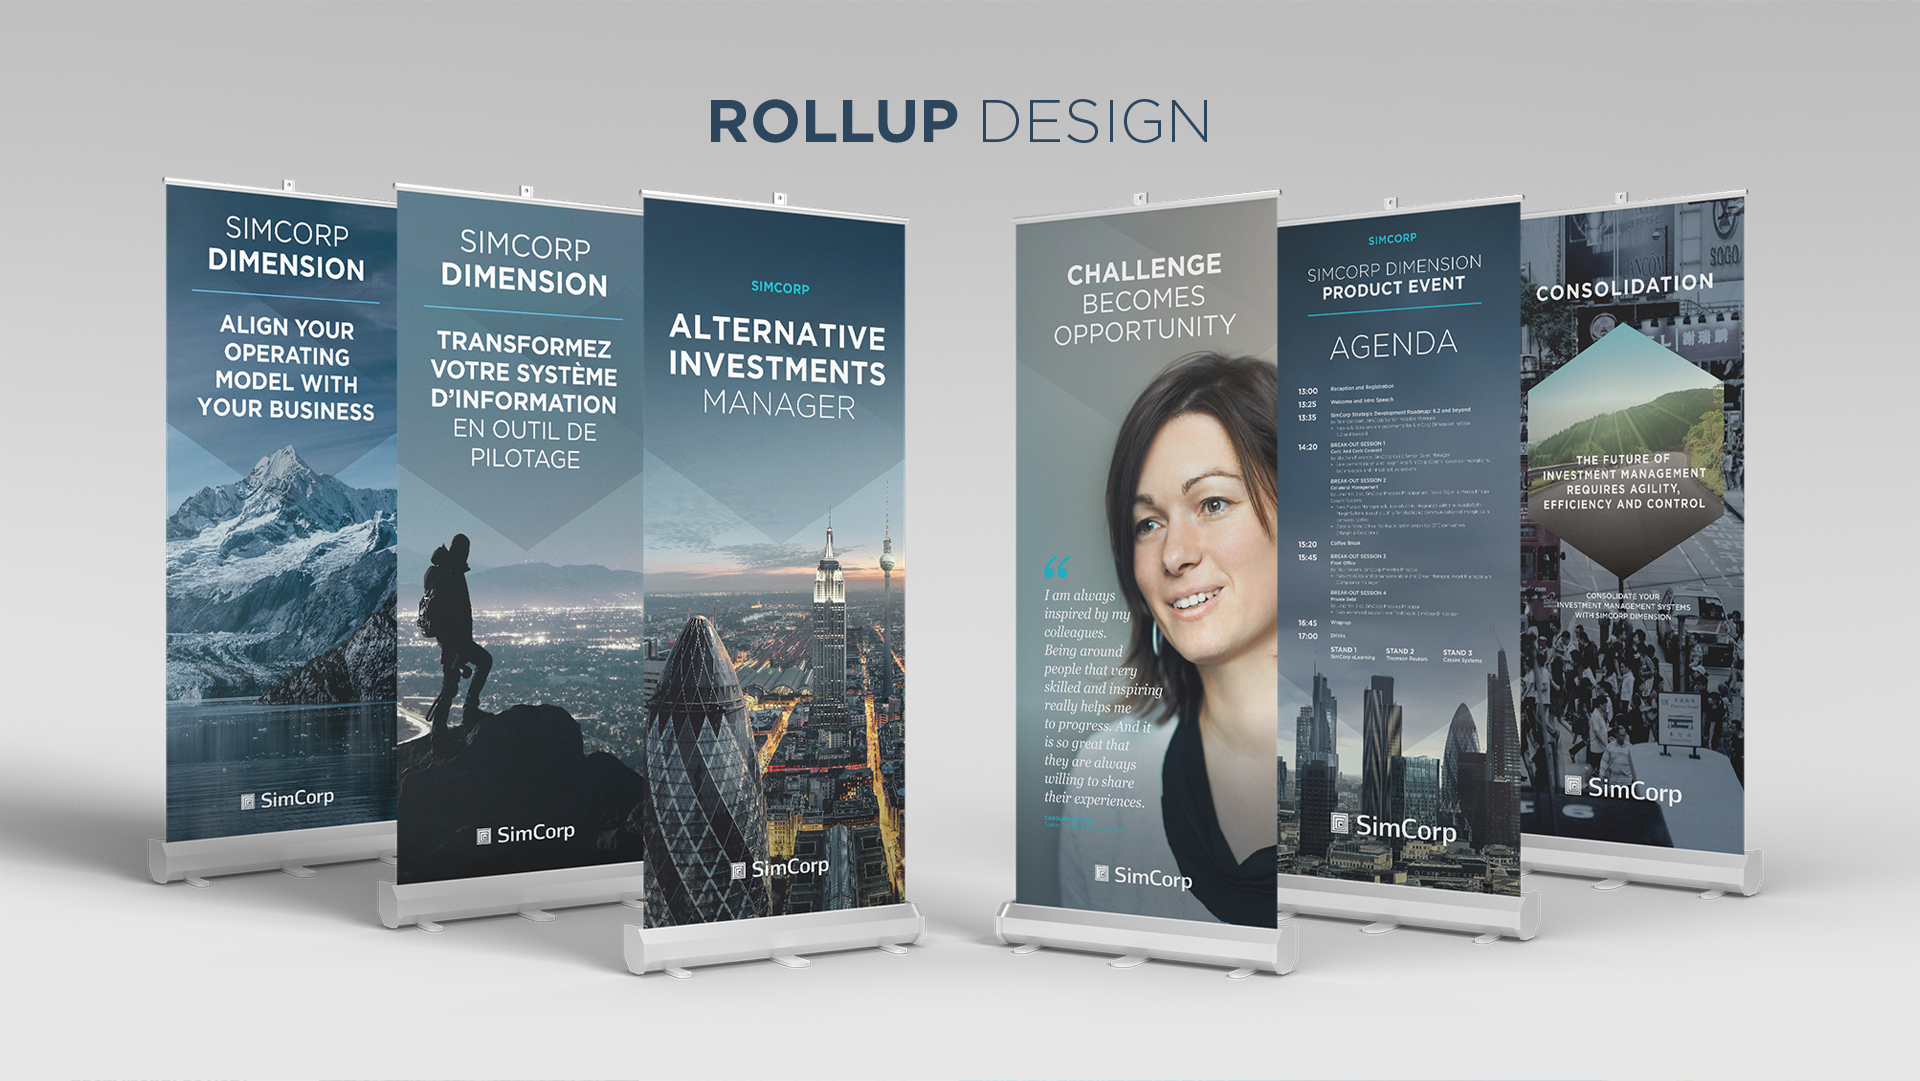 Rollup design